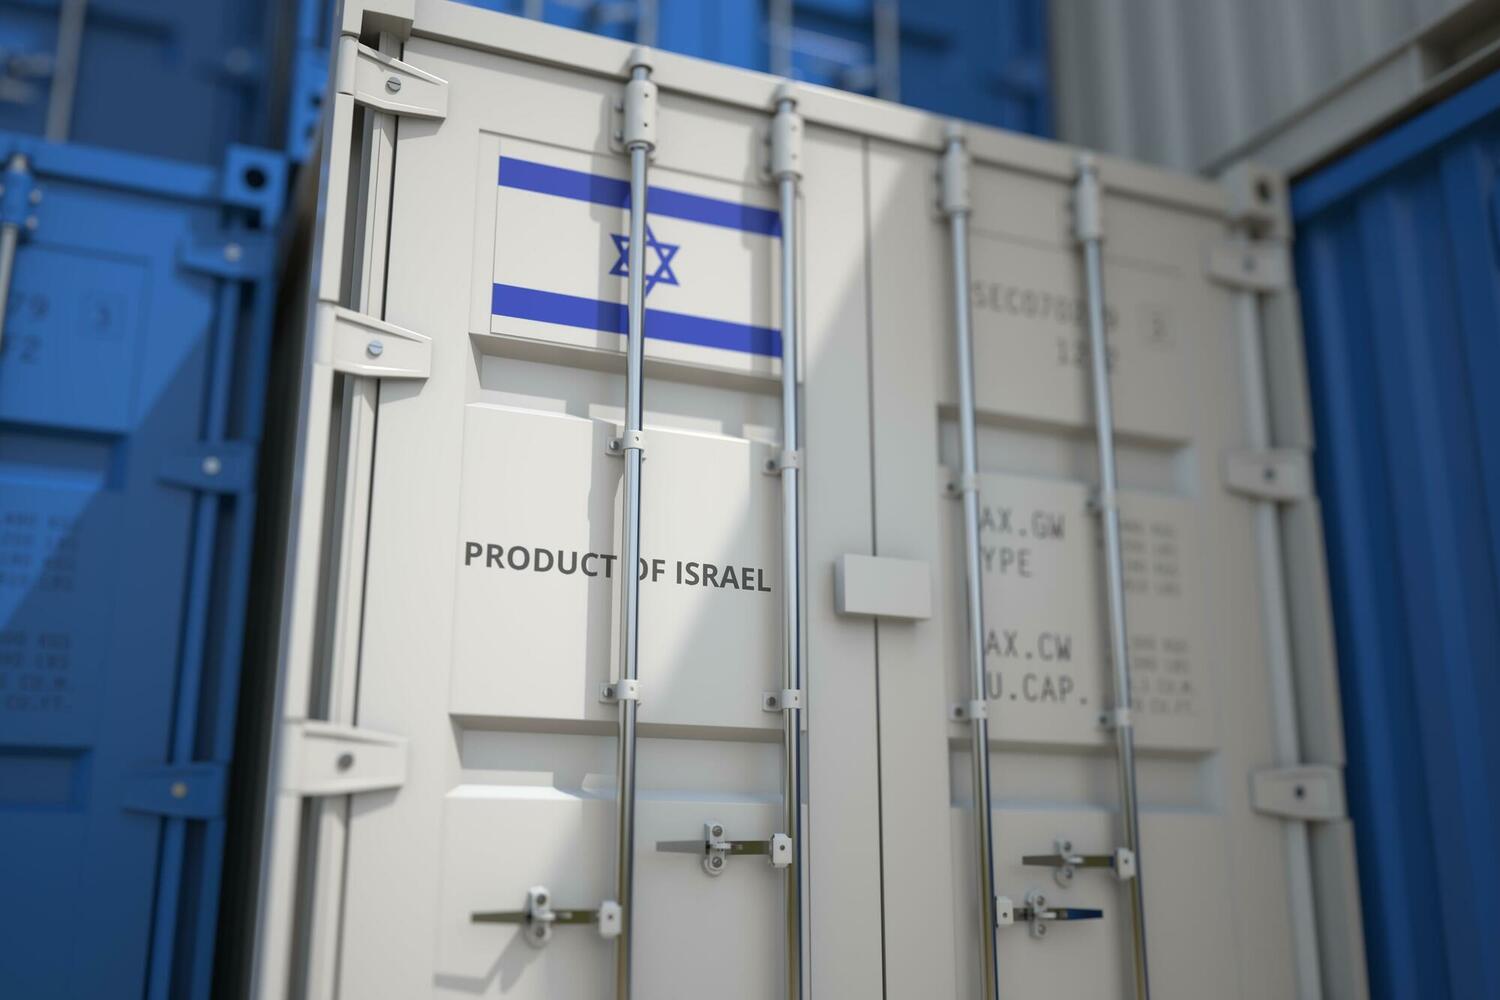  ВВП Израиля сократился на 1,6%: повышение учетных ставок в мае под вопросом 